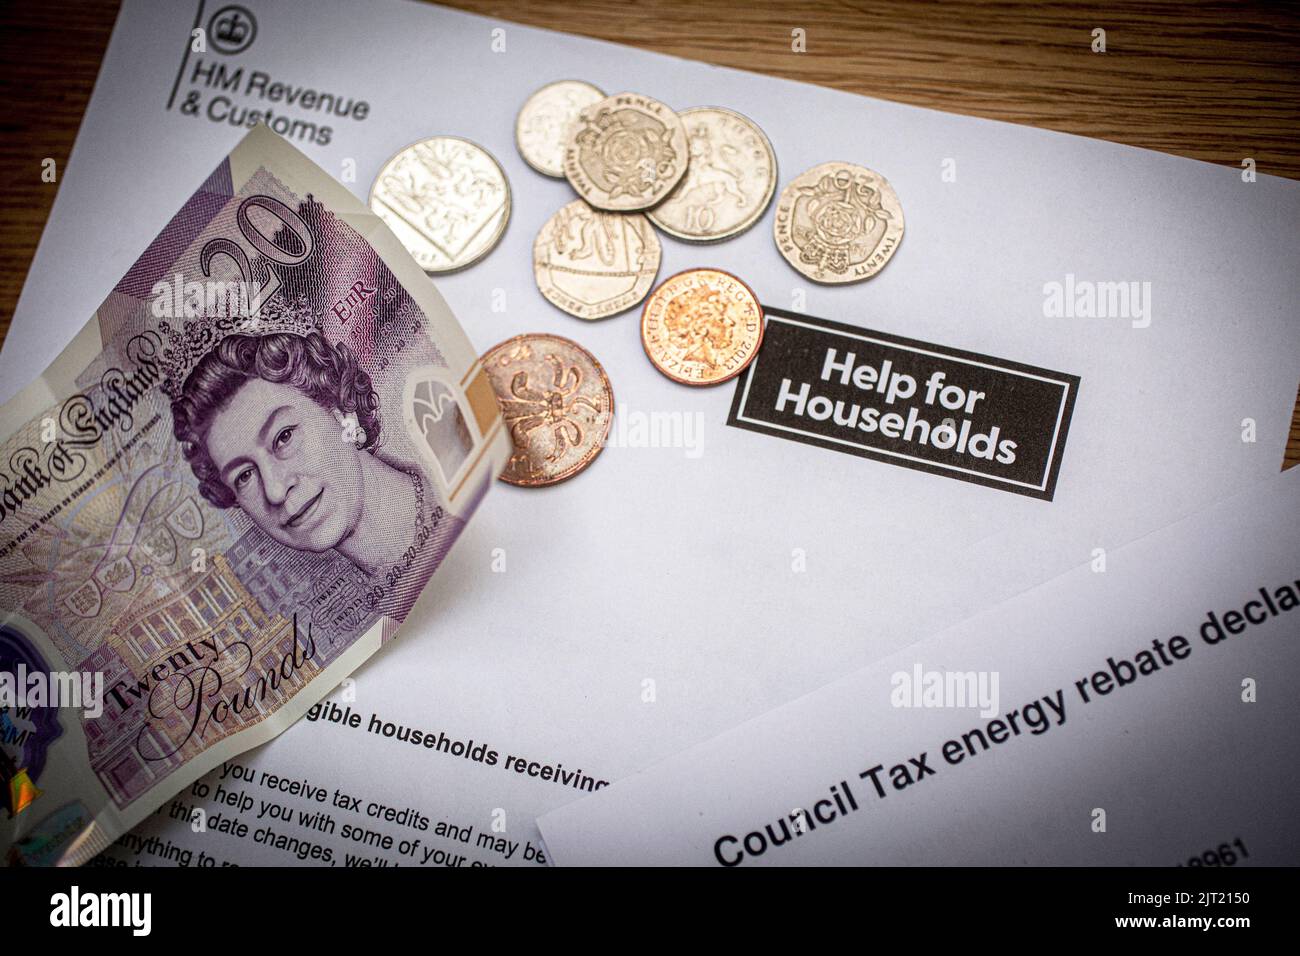 Britische £20-Note und Münzen auf dem Schreiben der Regierung von HM, in dem die britische Regierung über Haushaltshilfe informiert wurde, Vereinigtes Königreich Stockfoto